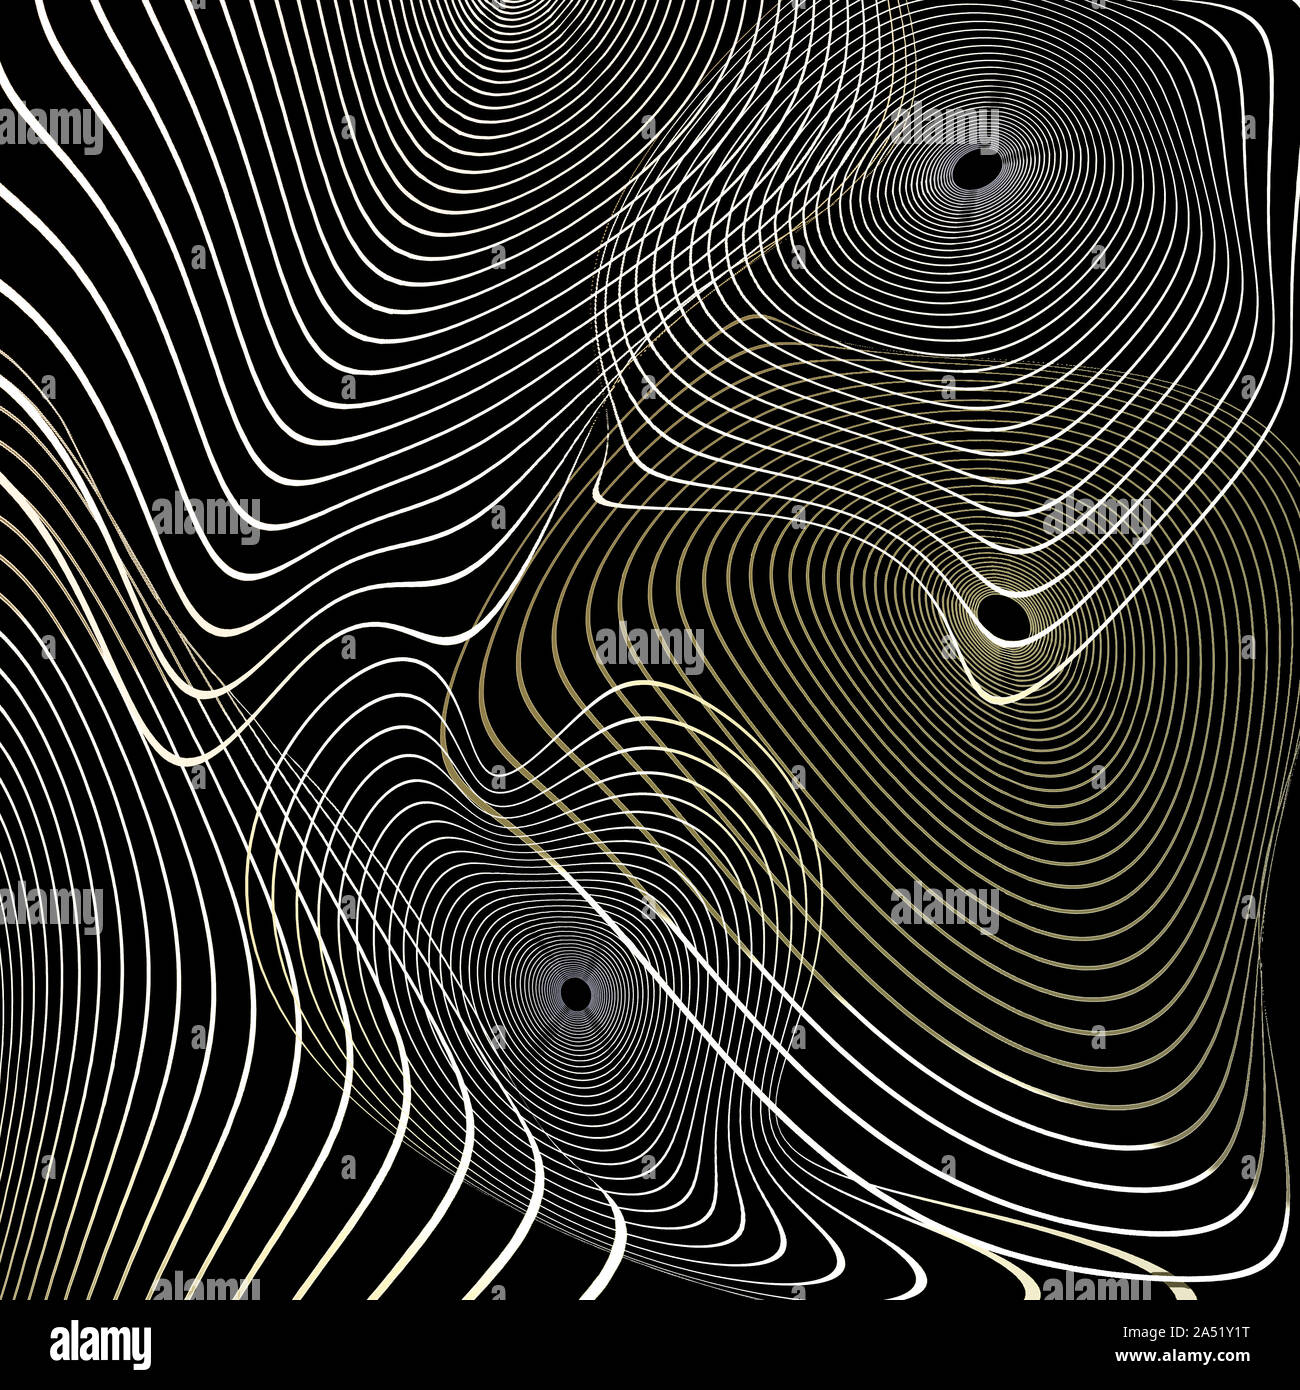 Les cercles concentriques à rayures déformée de lignes ondulées de couleur doré sur fond noir - résumé fond raster numérique généré, l'illustration. Banque D'Images